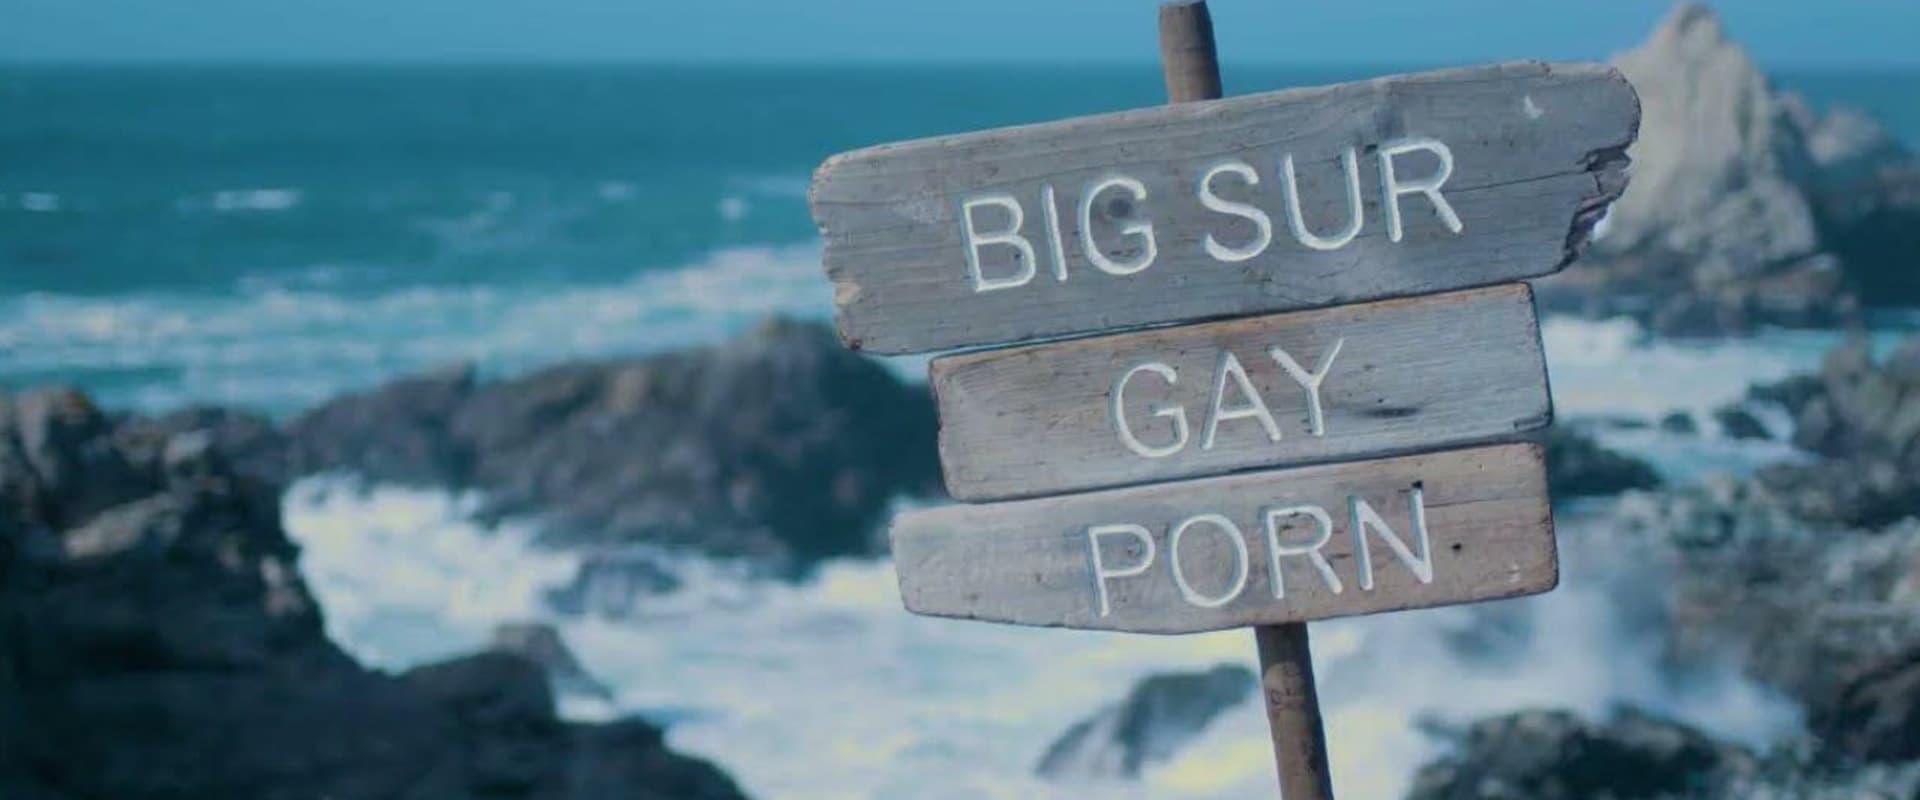 Big Sur Gay Porn